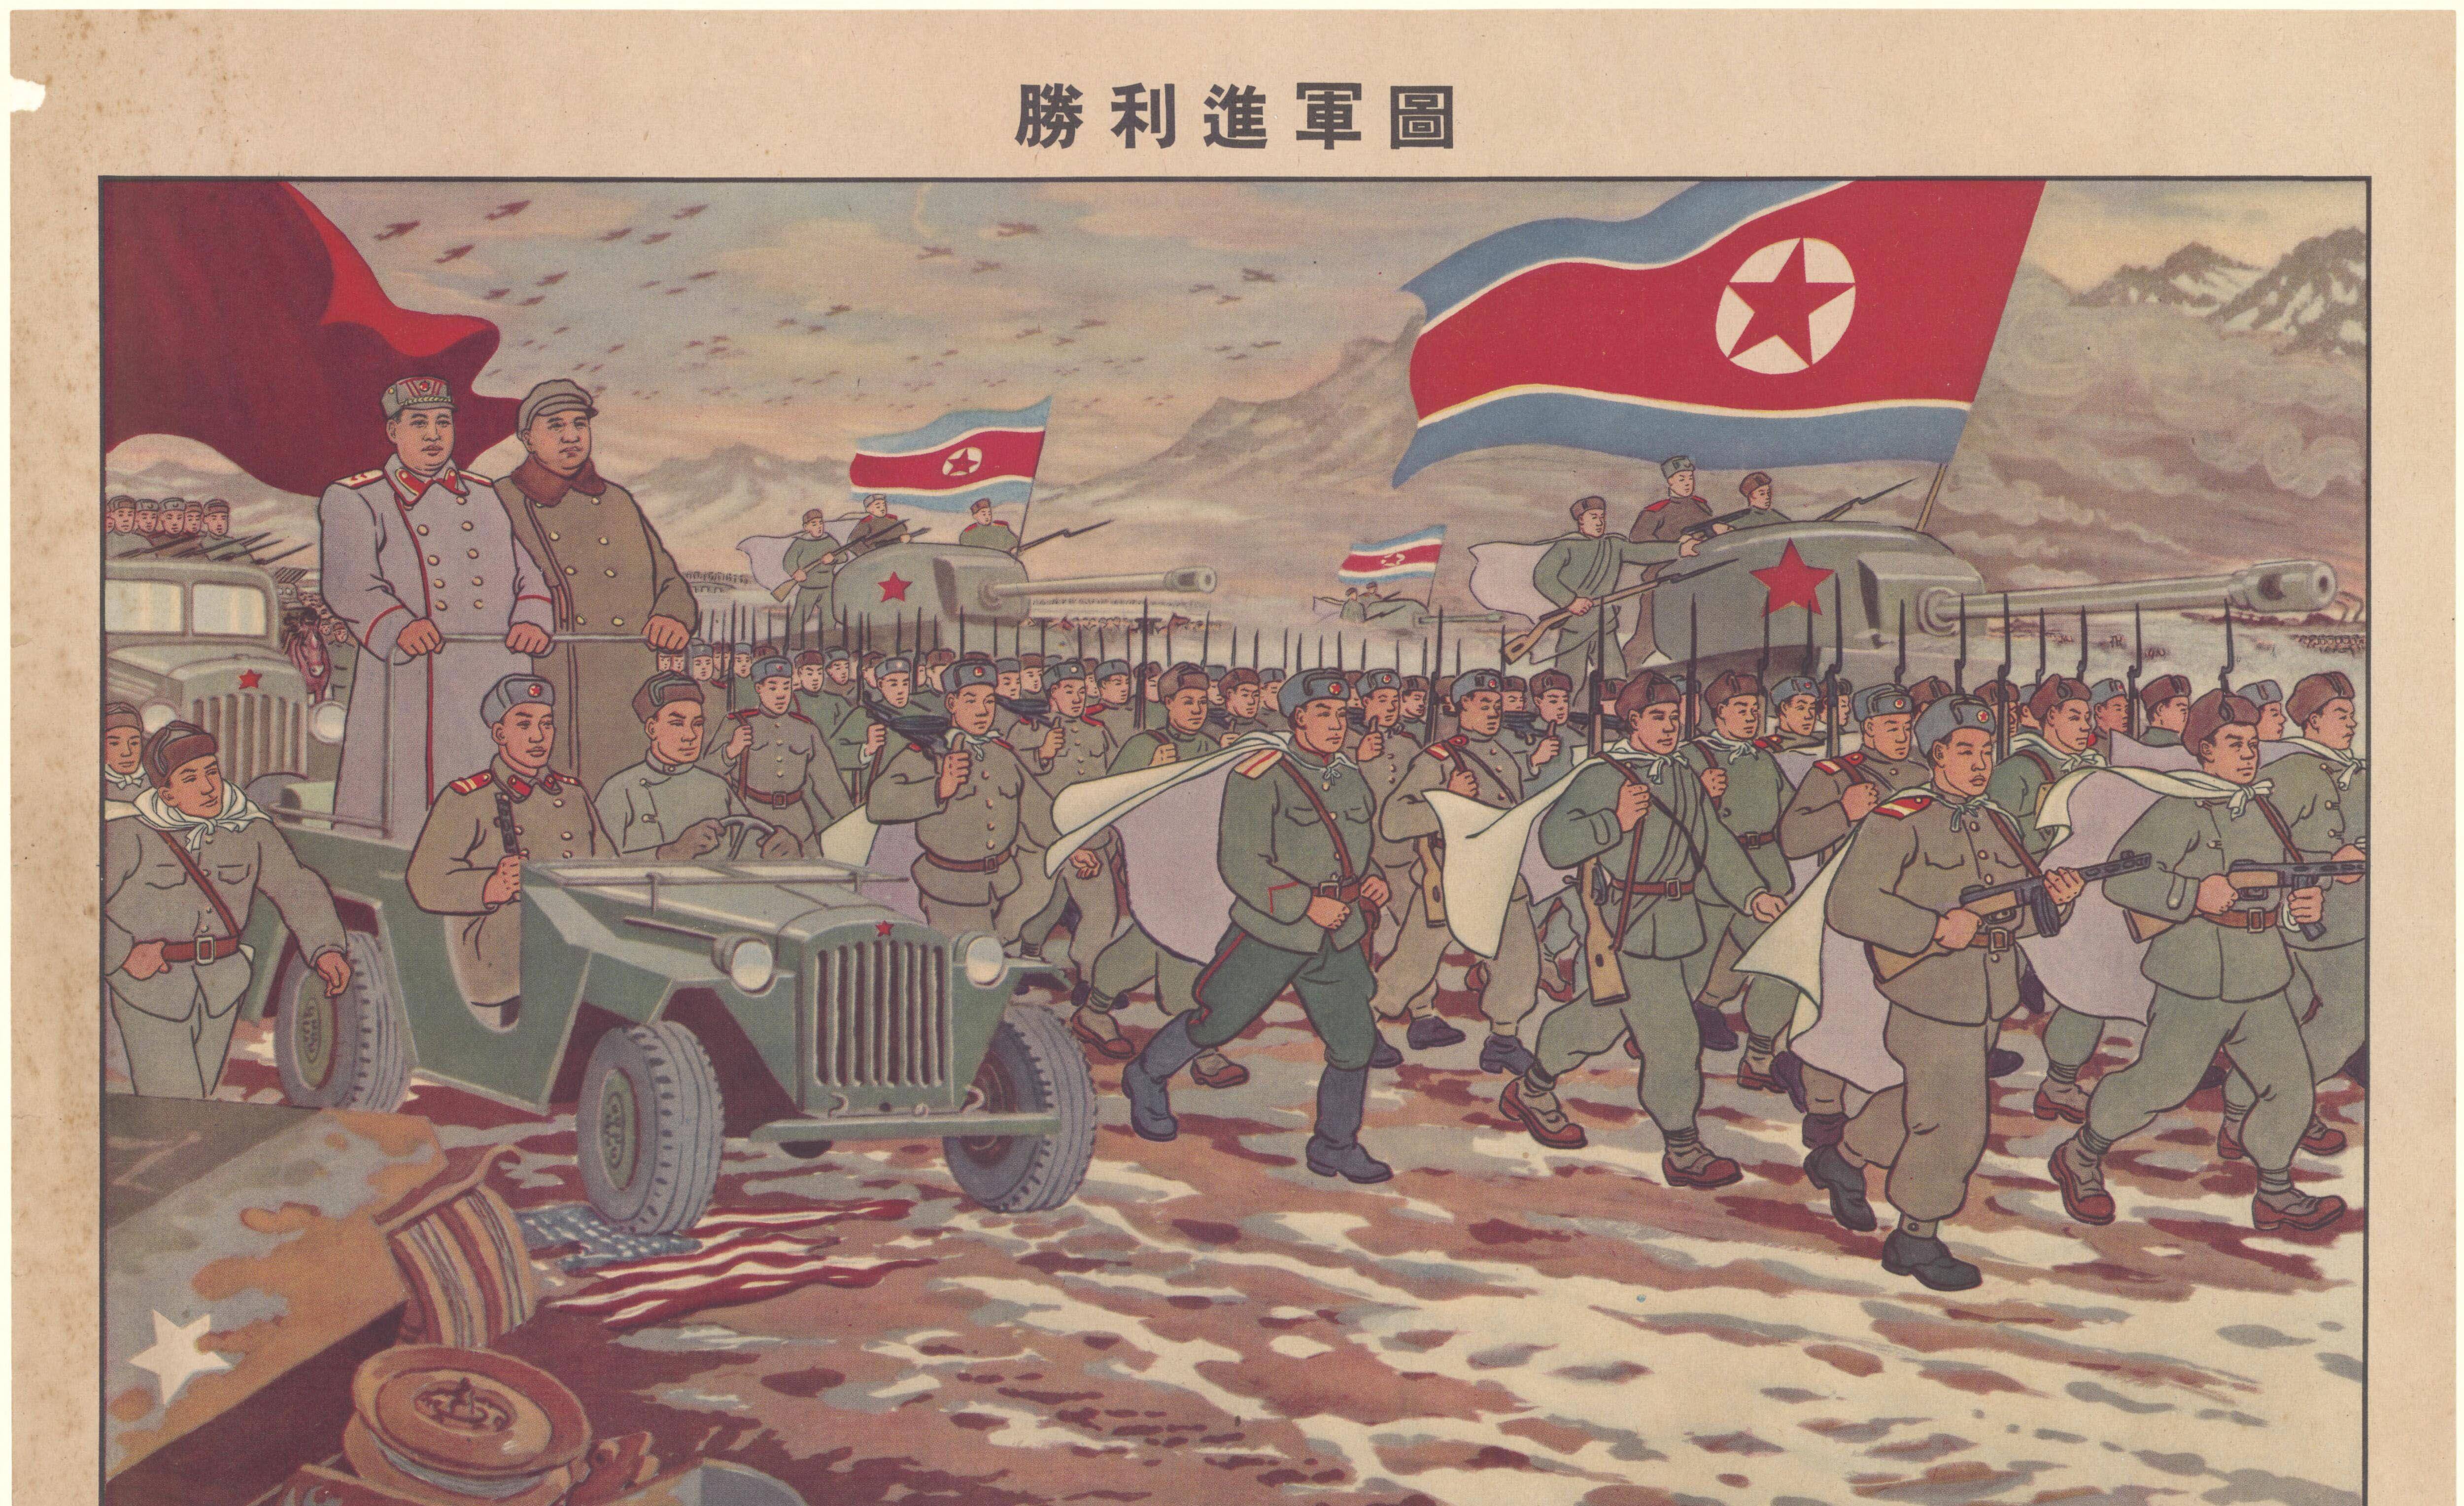 怀旧50年代抗美援朝宣传画,极大鼓舞了中国人民的斗志